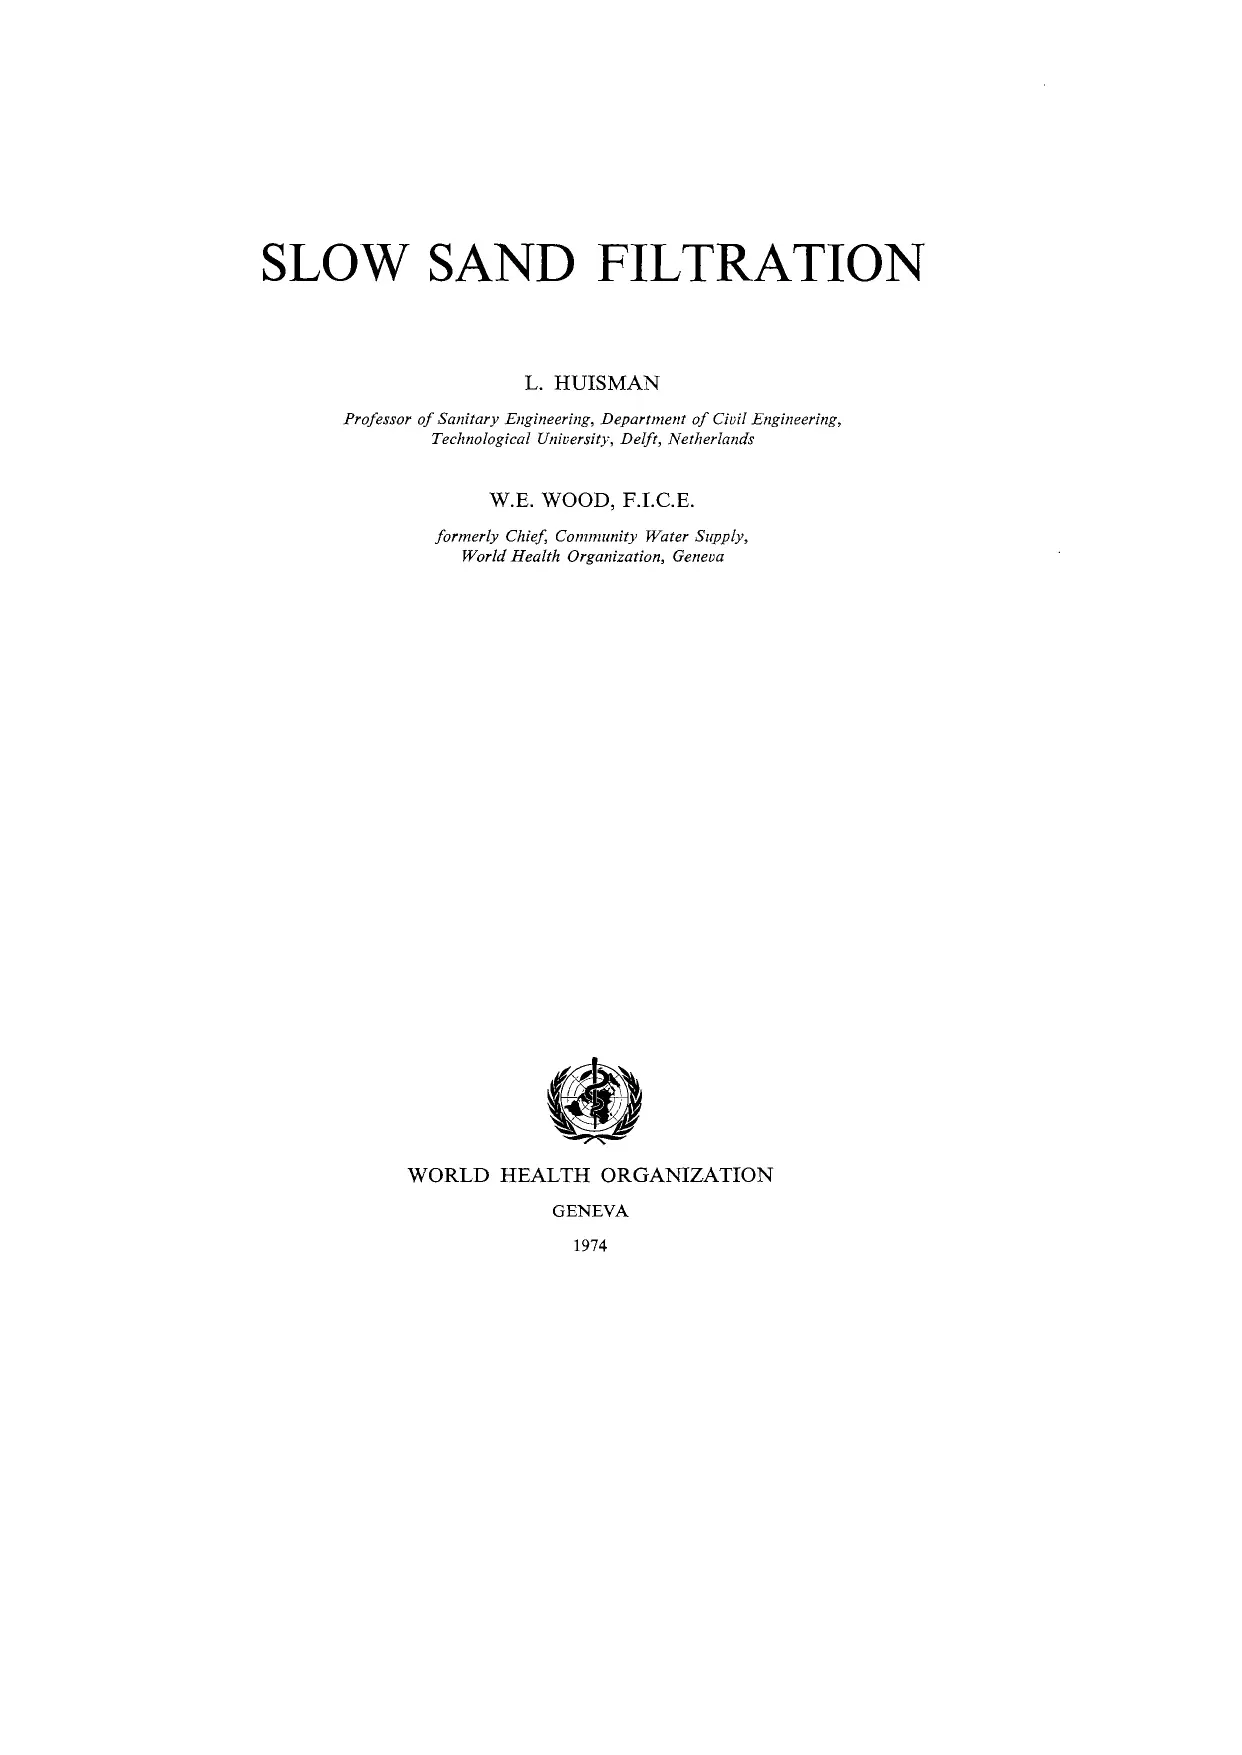 Slow Sand Filtration